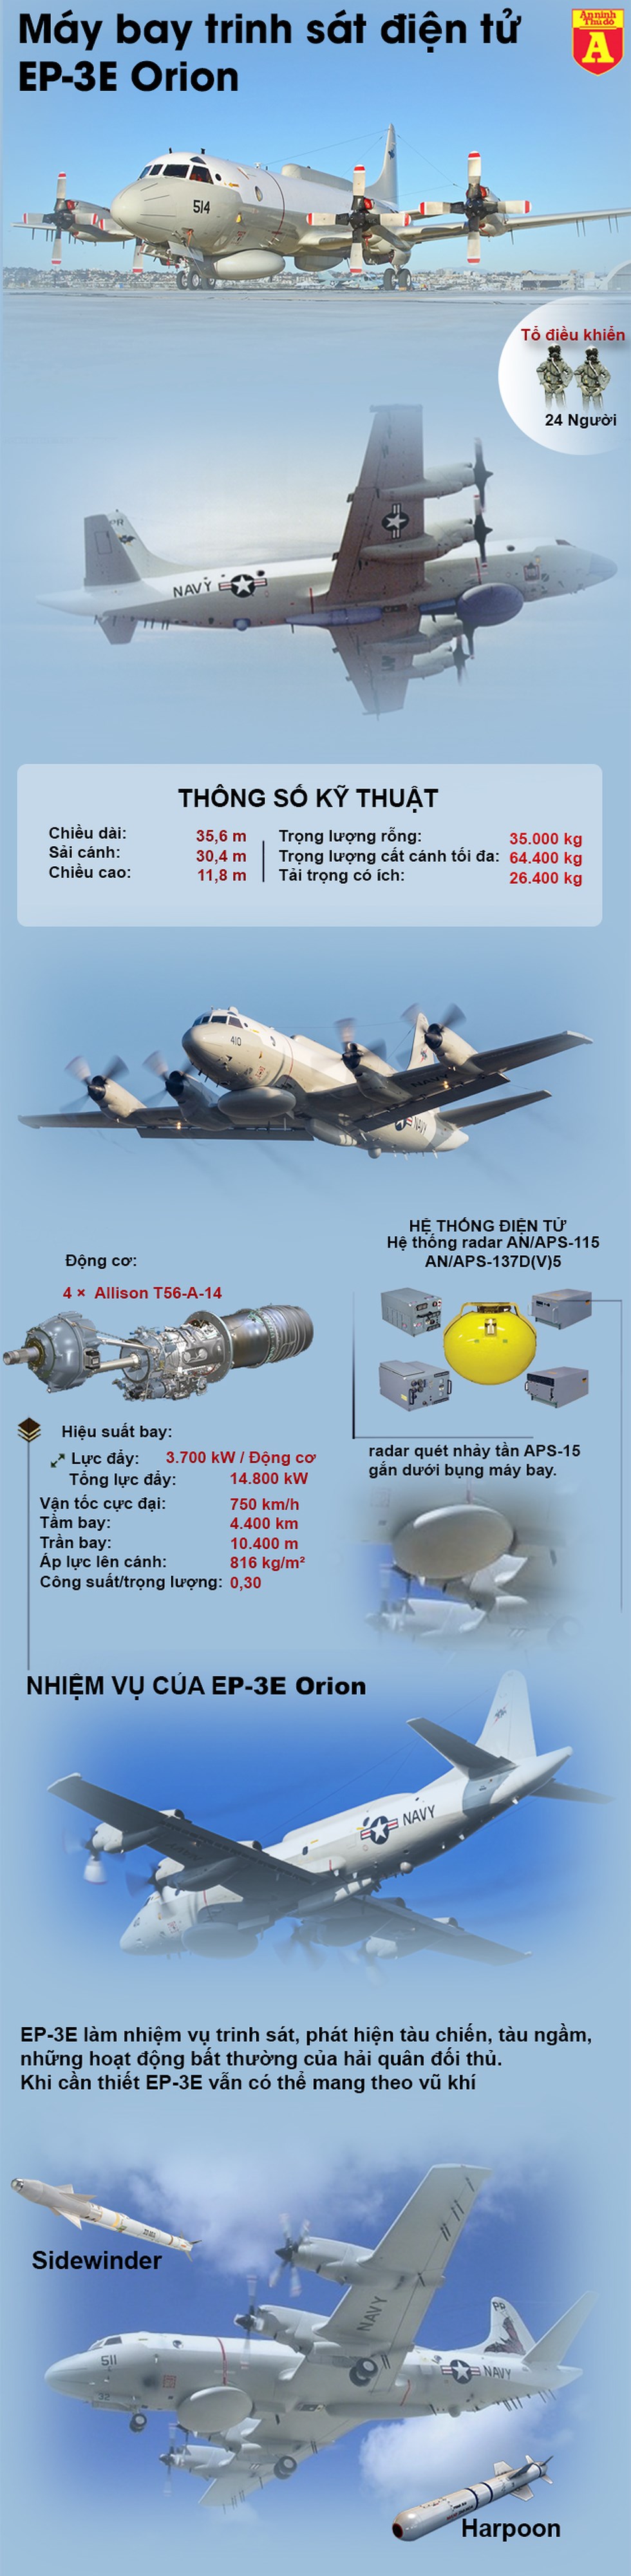 [Infographics] Hé lộ thông tin máy bay quân sự Mỹ vừa bị Su-30MK2 của Venezuela áp sát - Ảnh 1